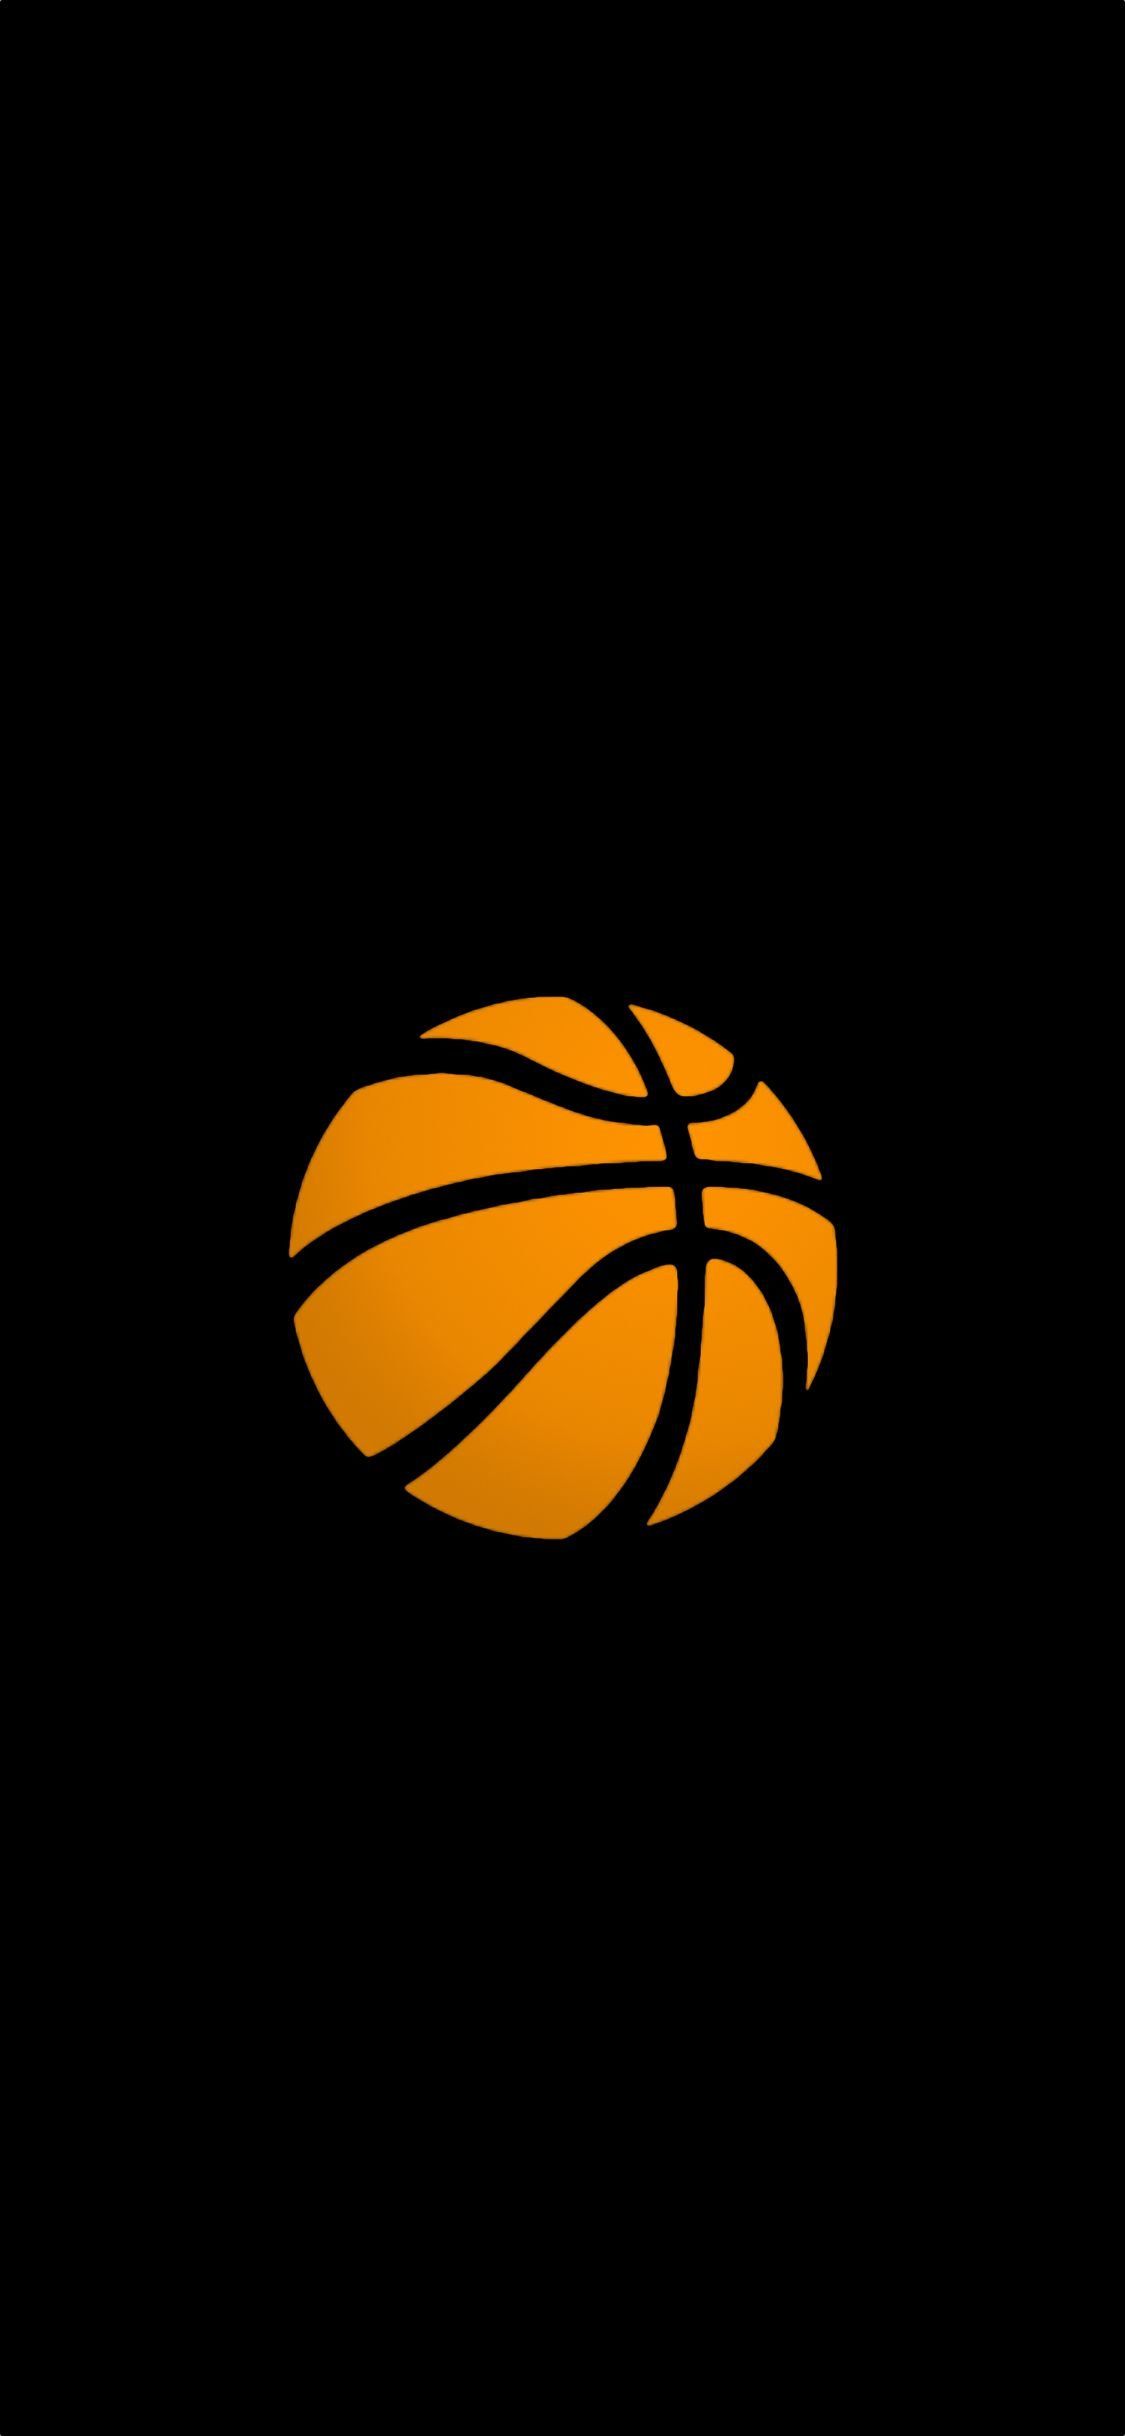 iPhone X Basketball Wallpaper